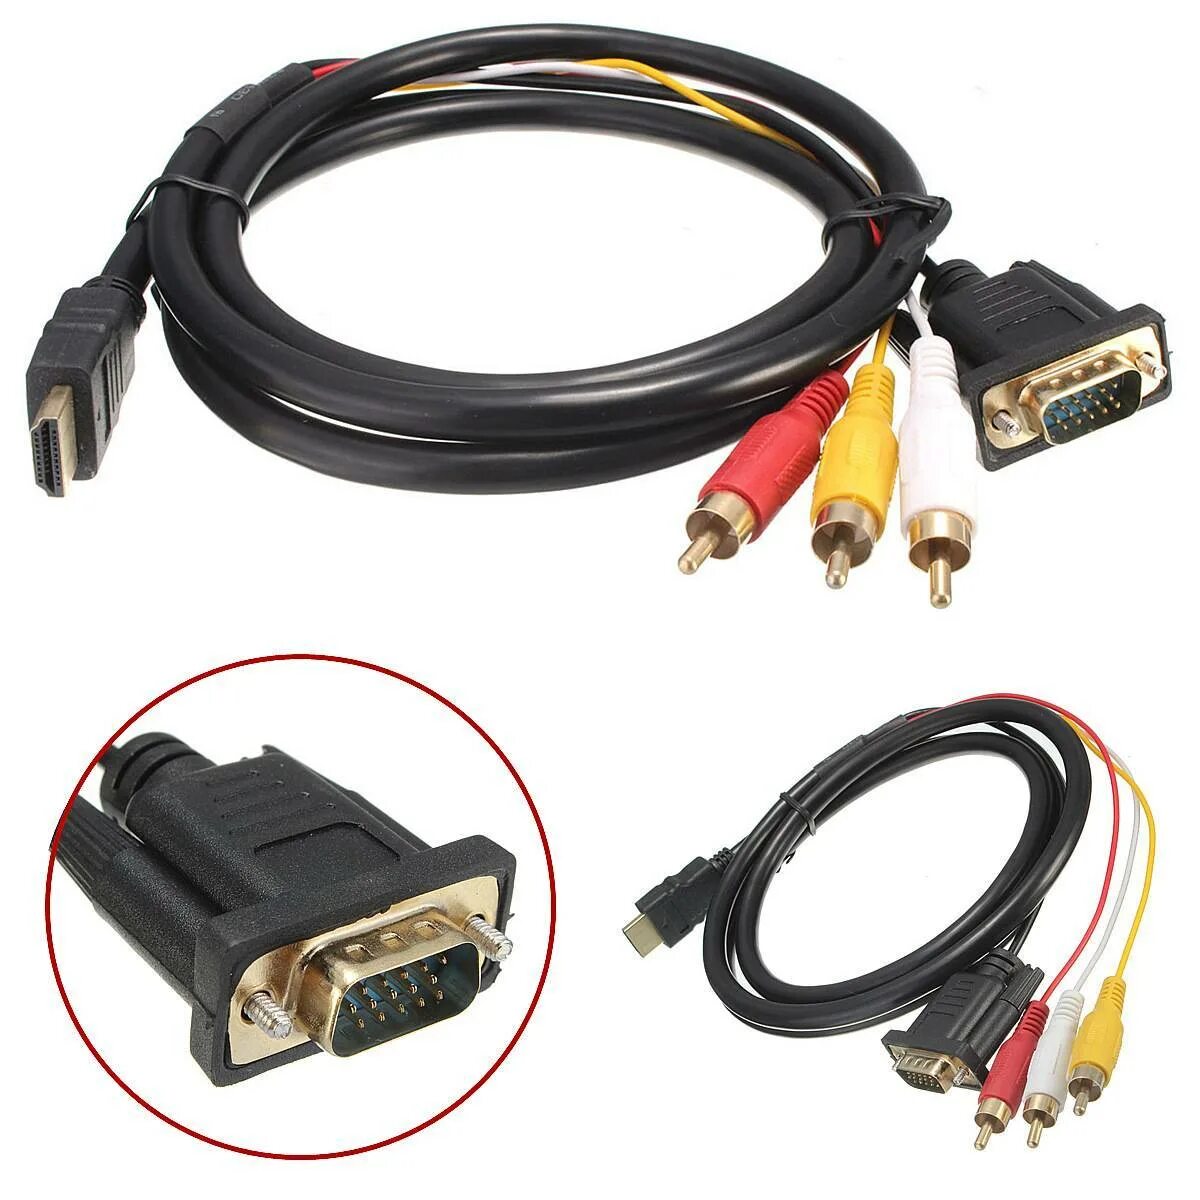 Cable соединительный кабель VGA HDMI 2. Кабель HDMI- DVI+2 RCA. Кабель 3 RCA - VGA для монитора. Переходник VGA-3rca для подключения монитора.